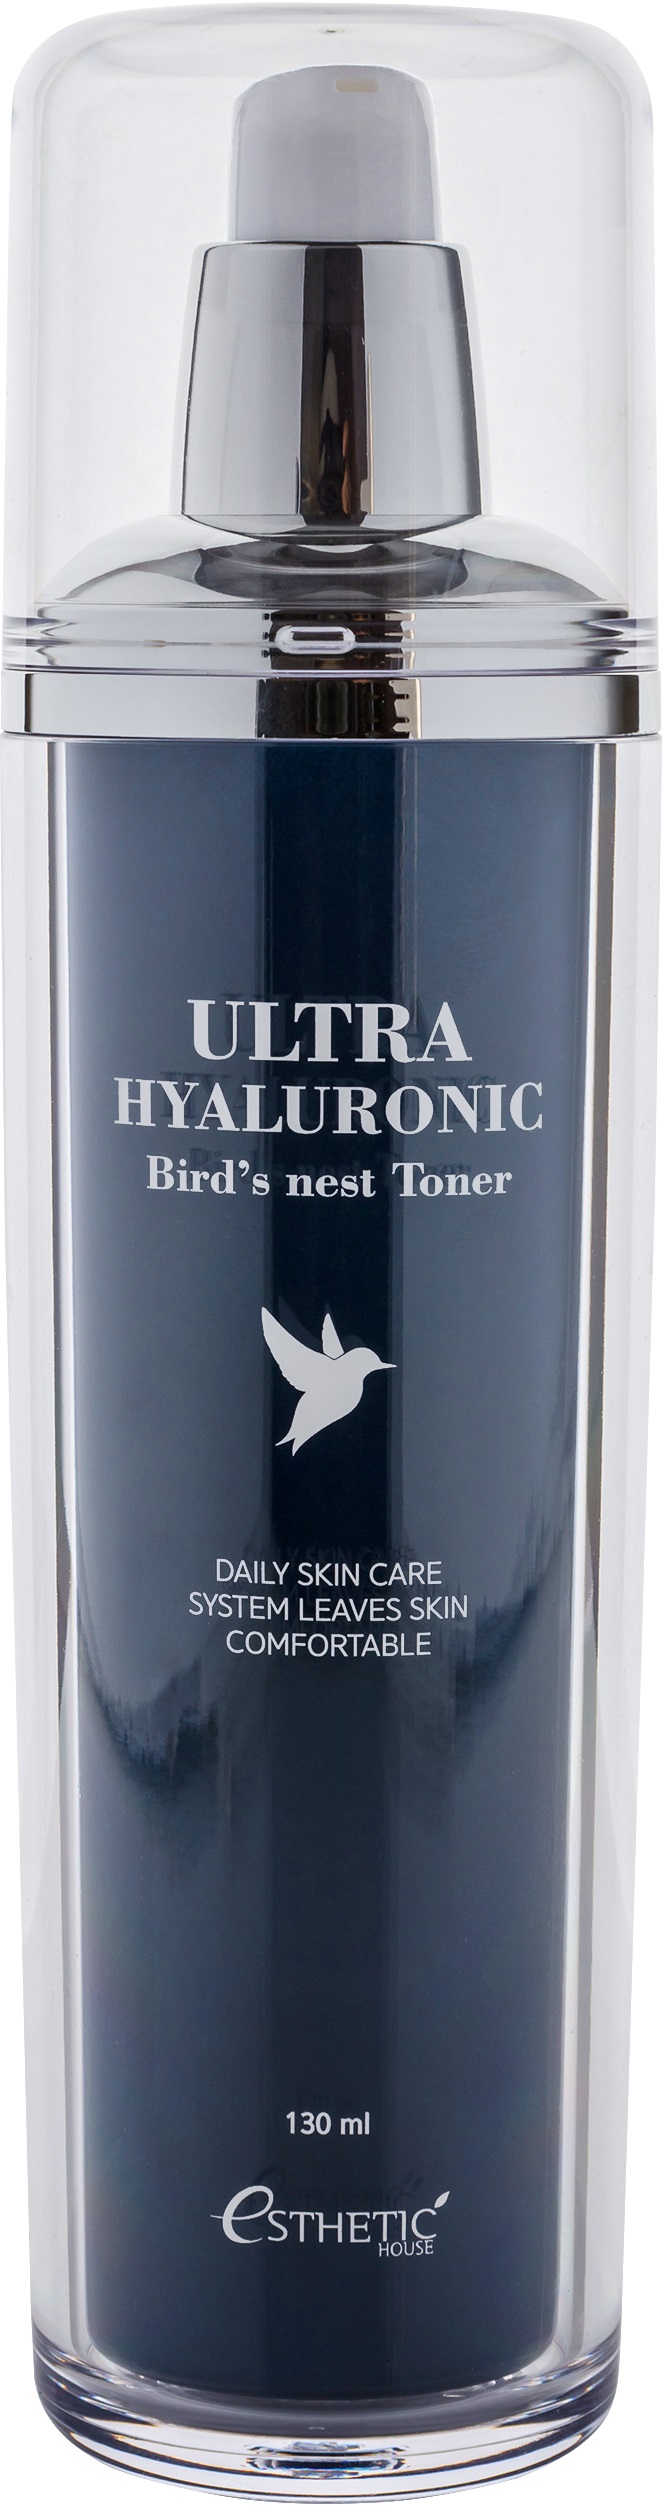 Esthetic House Ultra Hyaluronic acid Bird's nest Toner Тонер для лица, 130 мл